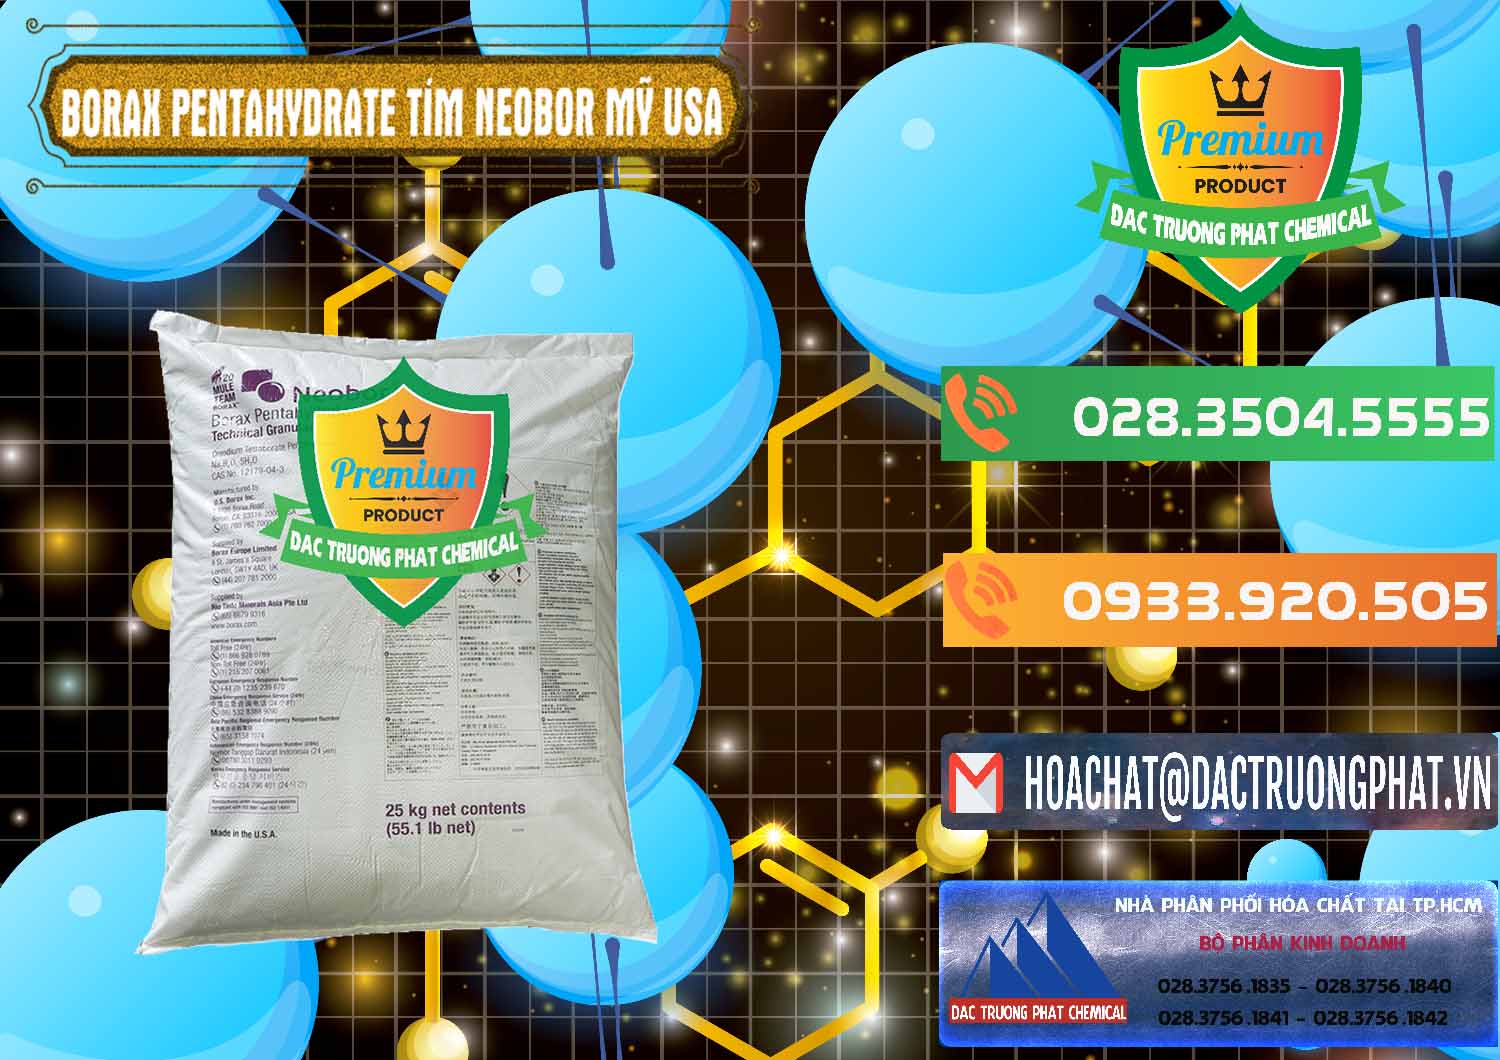 Nơi chuyên bán & phân phối Borax Pentahydrate Bao Tím Neobor TG Mỹ Usa - 0277 - Nhà phân phối và cung cấp hóa chất tại TP.HCM - hoachatxulynuoc.com.vn